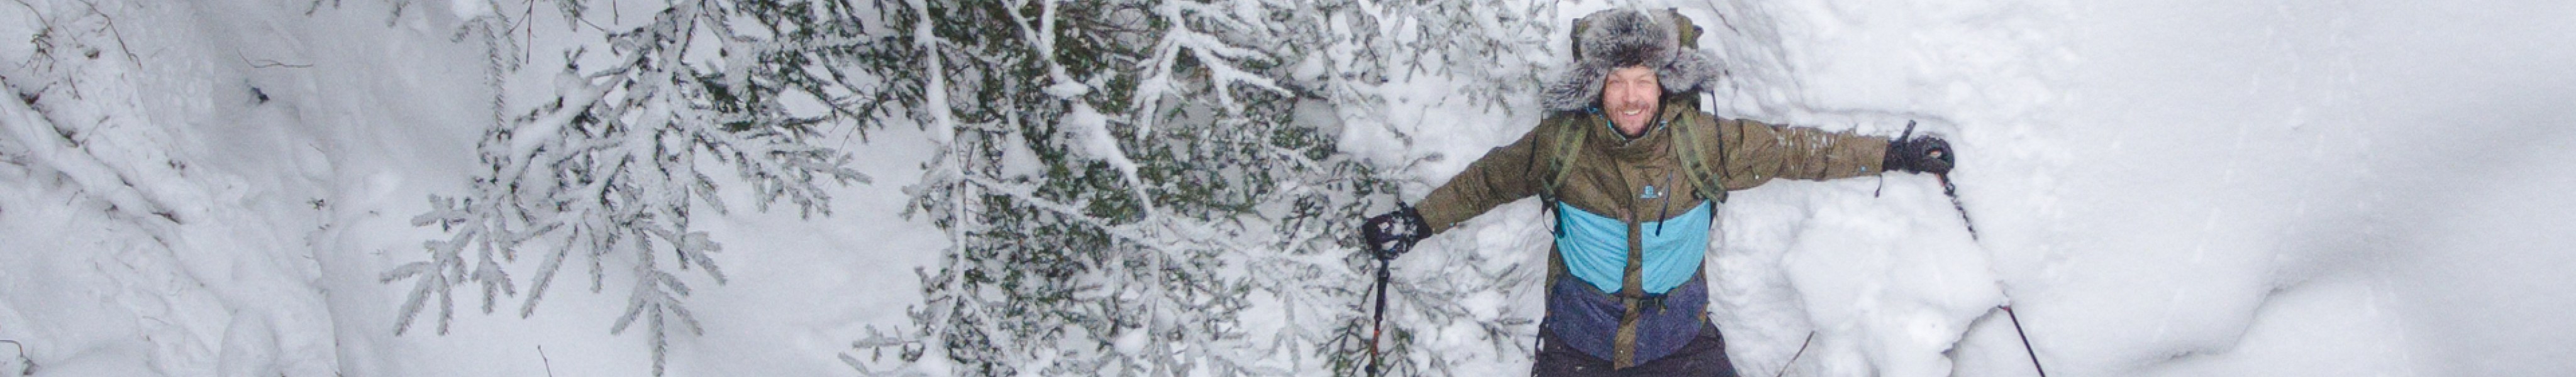 Mies makaa lumessa metsässä talvivarusteissa ja lumikengissä.